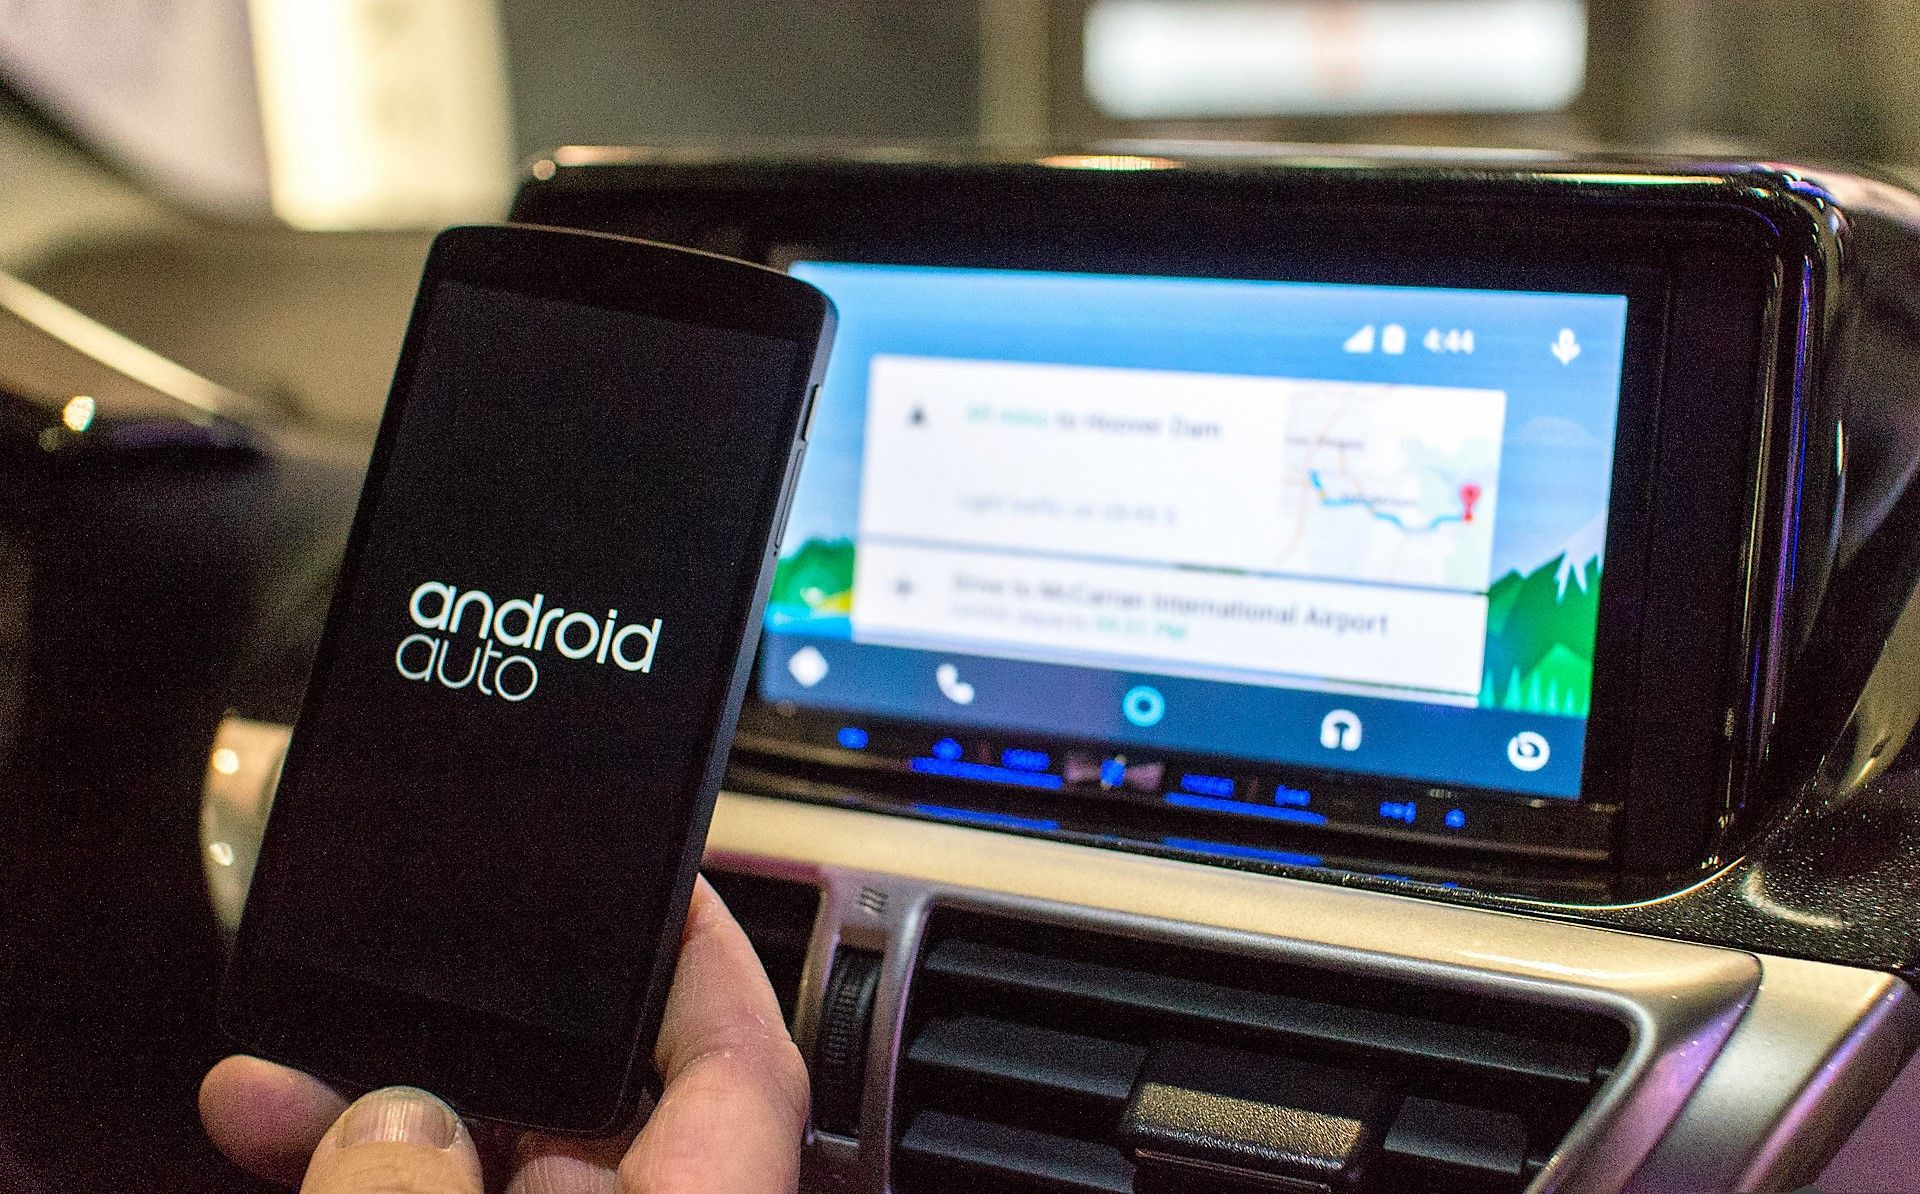 Android Auto теперь доступен и в России